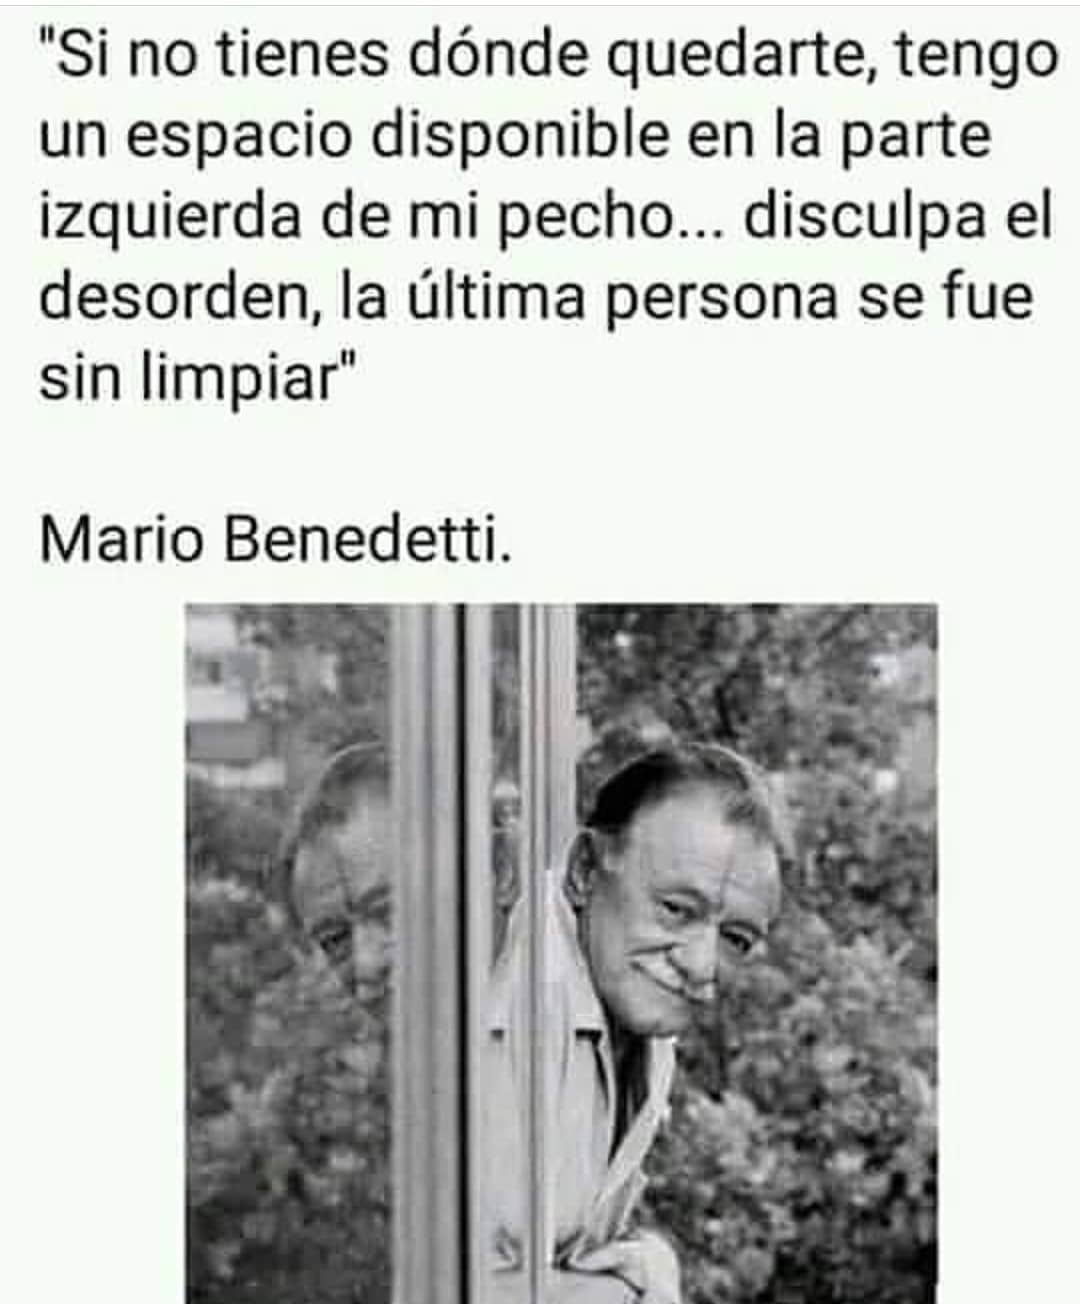 "Si no tienes dónde quedarte, tengo un espacio disponible en la parte izquierda de mi pecho... disculpa el desorden, la última persona se fue sin limpiar". Mario Benedetti.